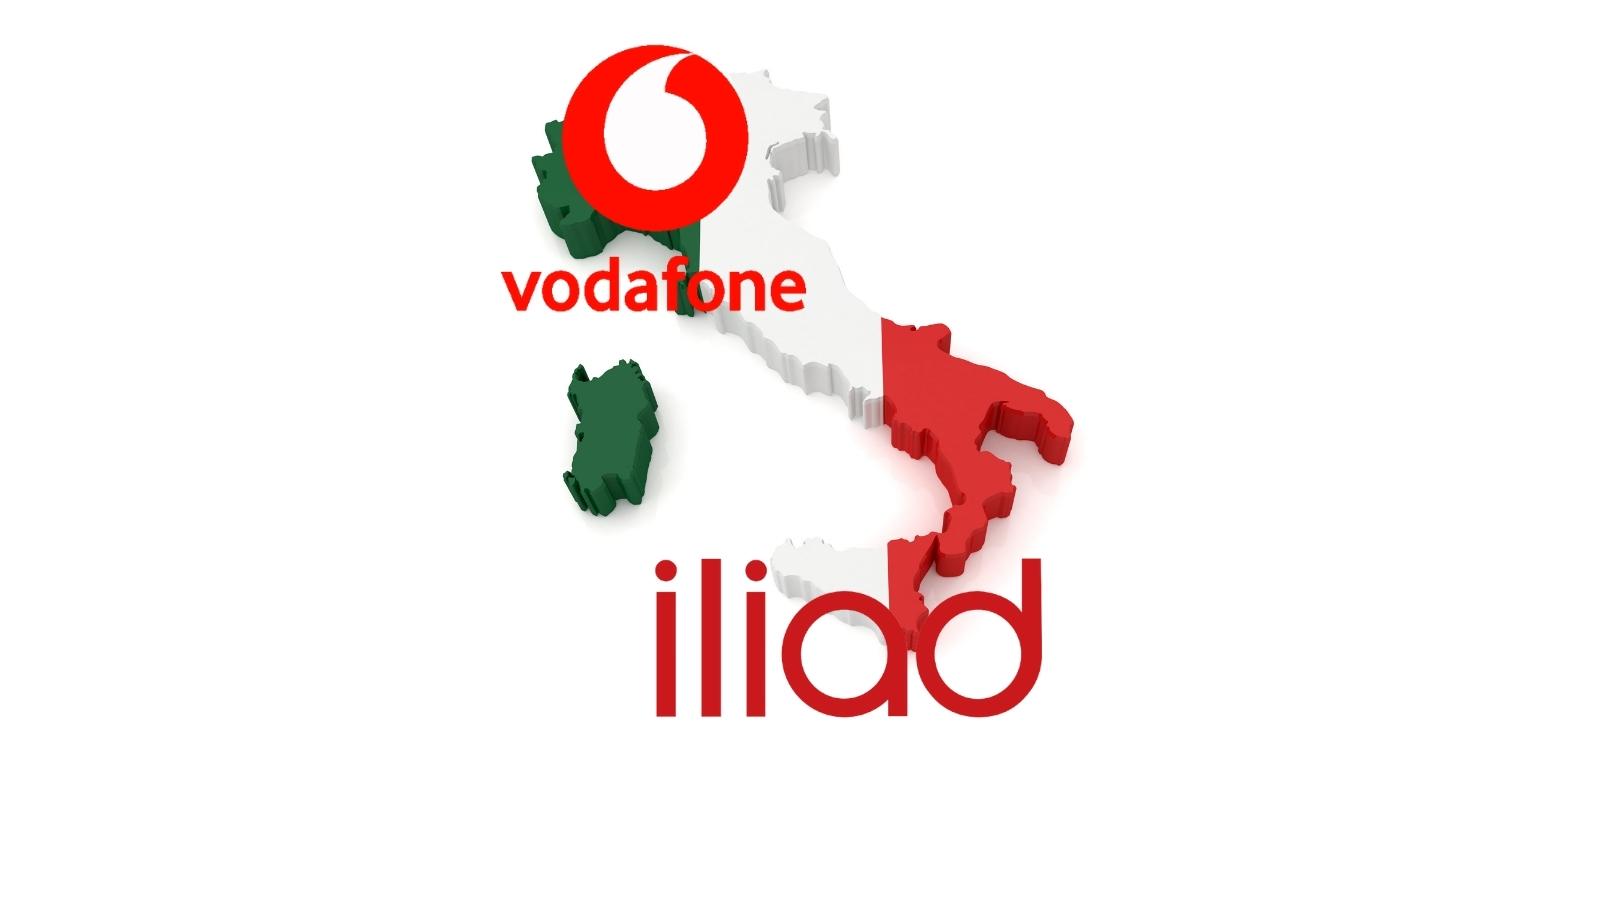 La proposta di fusione tra Iliad e Vodafone e le implicazioni per il settore